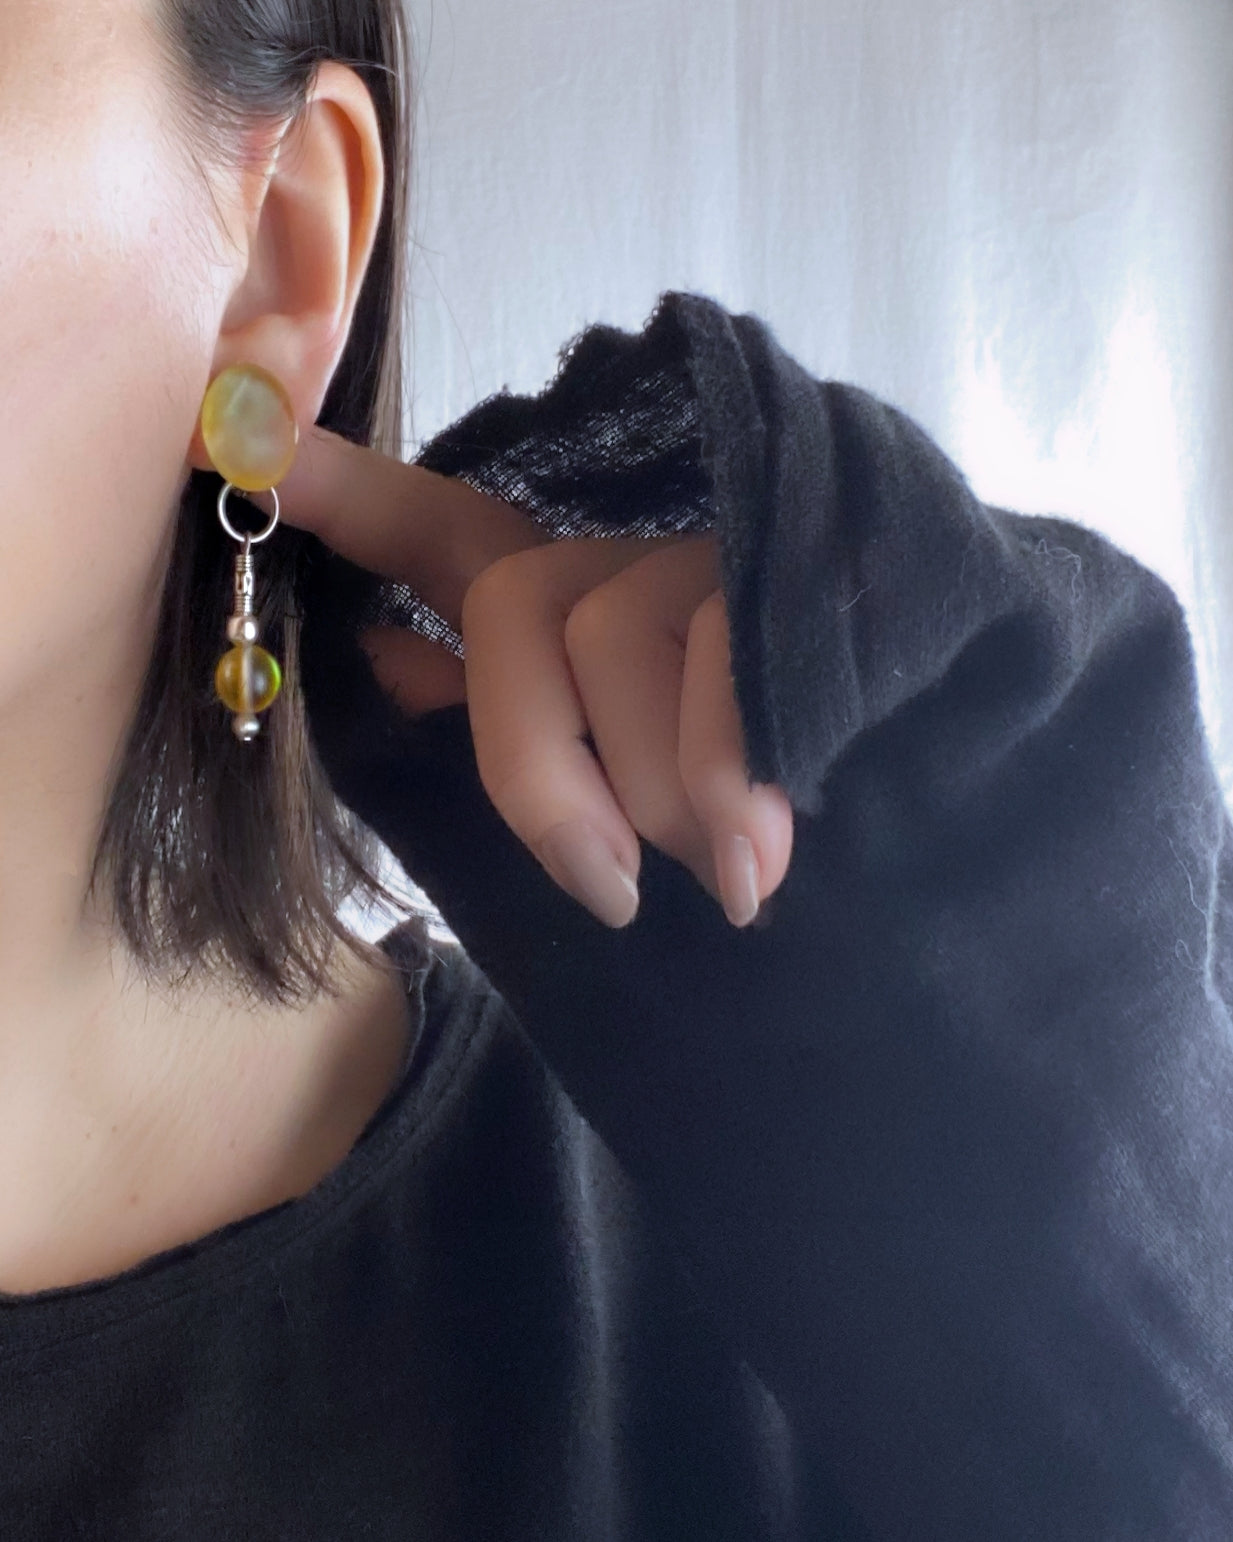 Dew drops-waterlily 2way earrings/Interchangeable/clear yellow